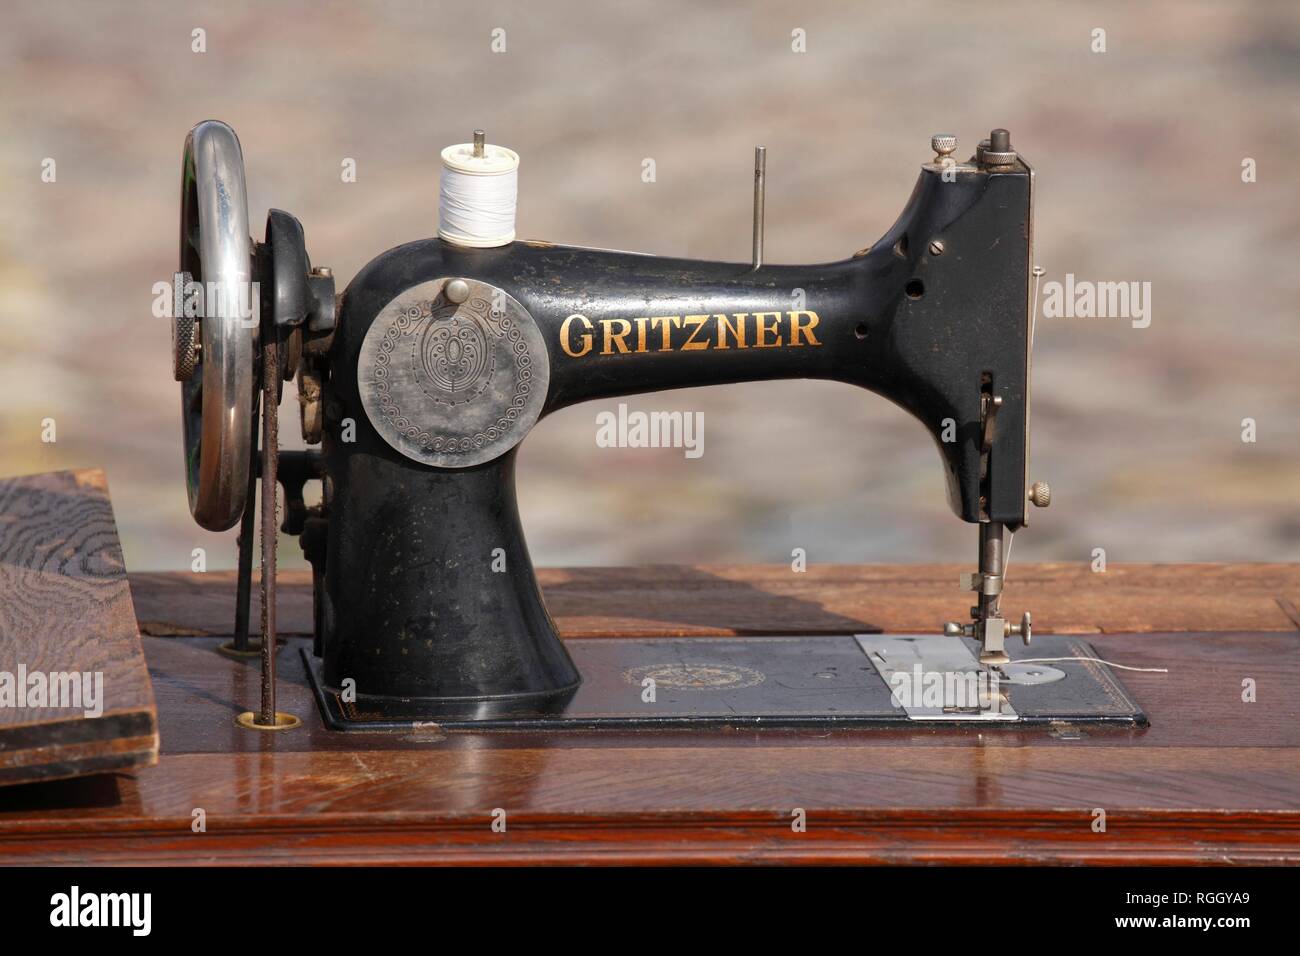 Gritzner vecchia macchina da cucire, Germania Foto stock - Alamy